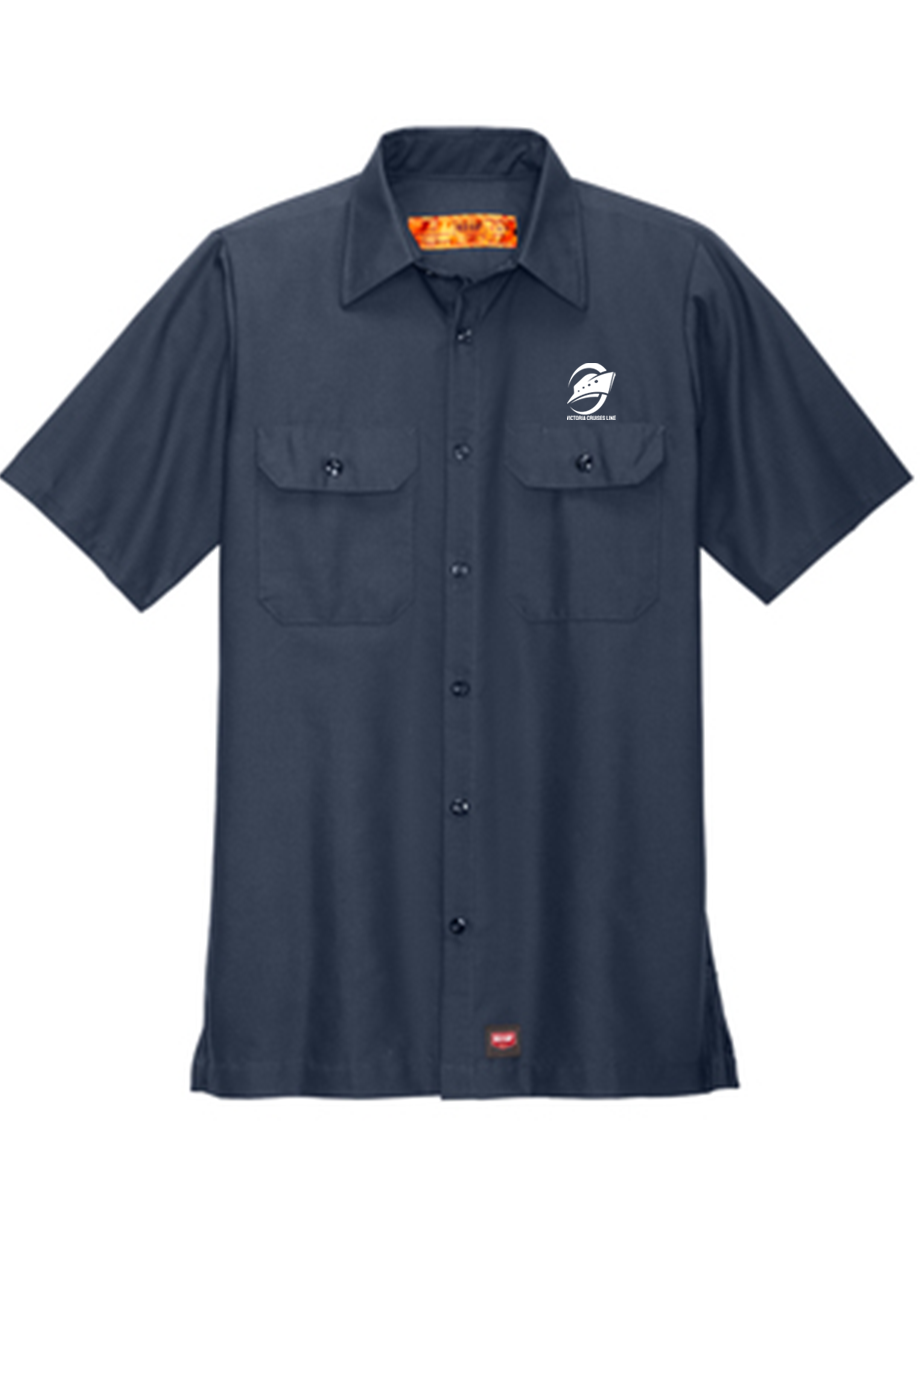 Men's Short Sleeve Double Pocket Work Shirt, Navy [Left Chest / VCL All White]